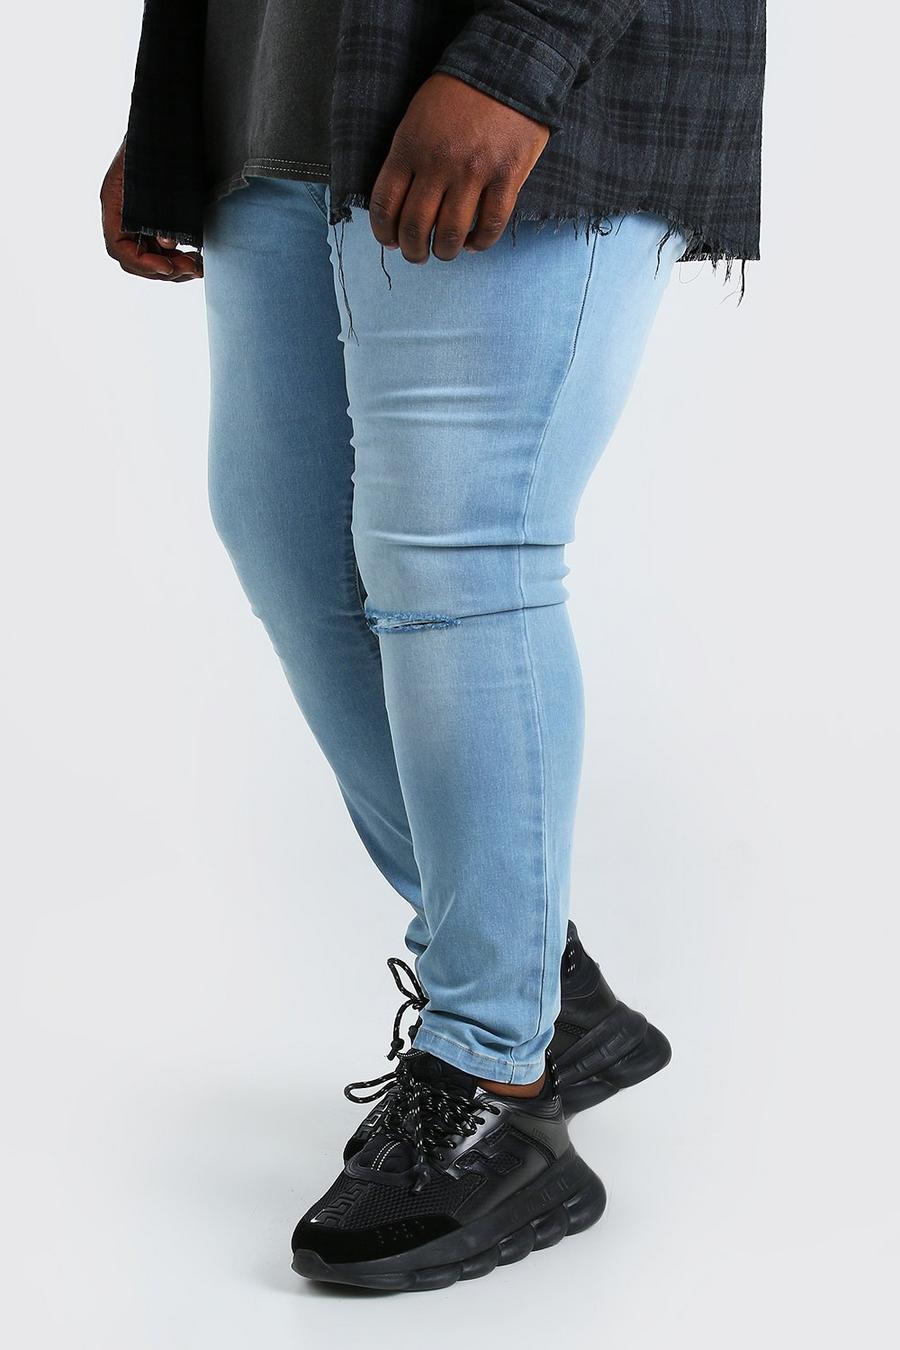 כחול בהיר מכנסי ג'ינס סופר סקיני עם ברך קרועה לגברים גדולים וגבוהים image number 1